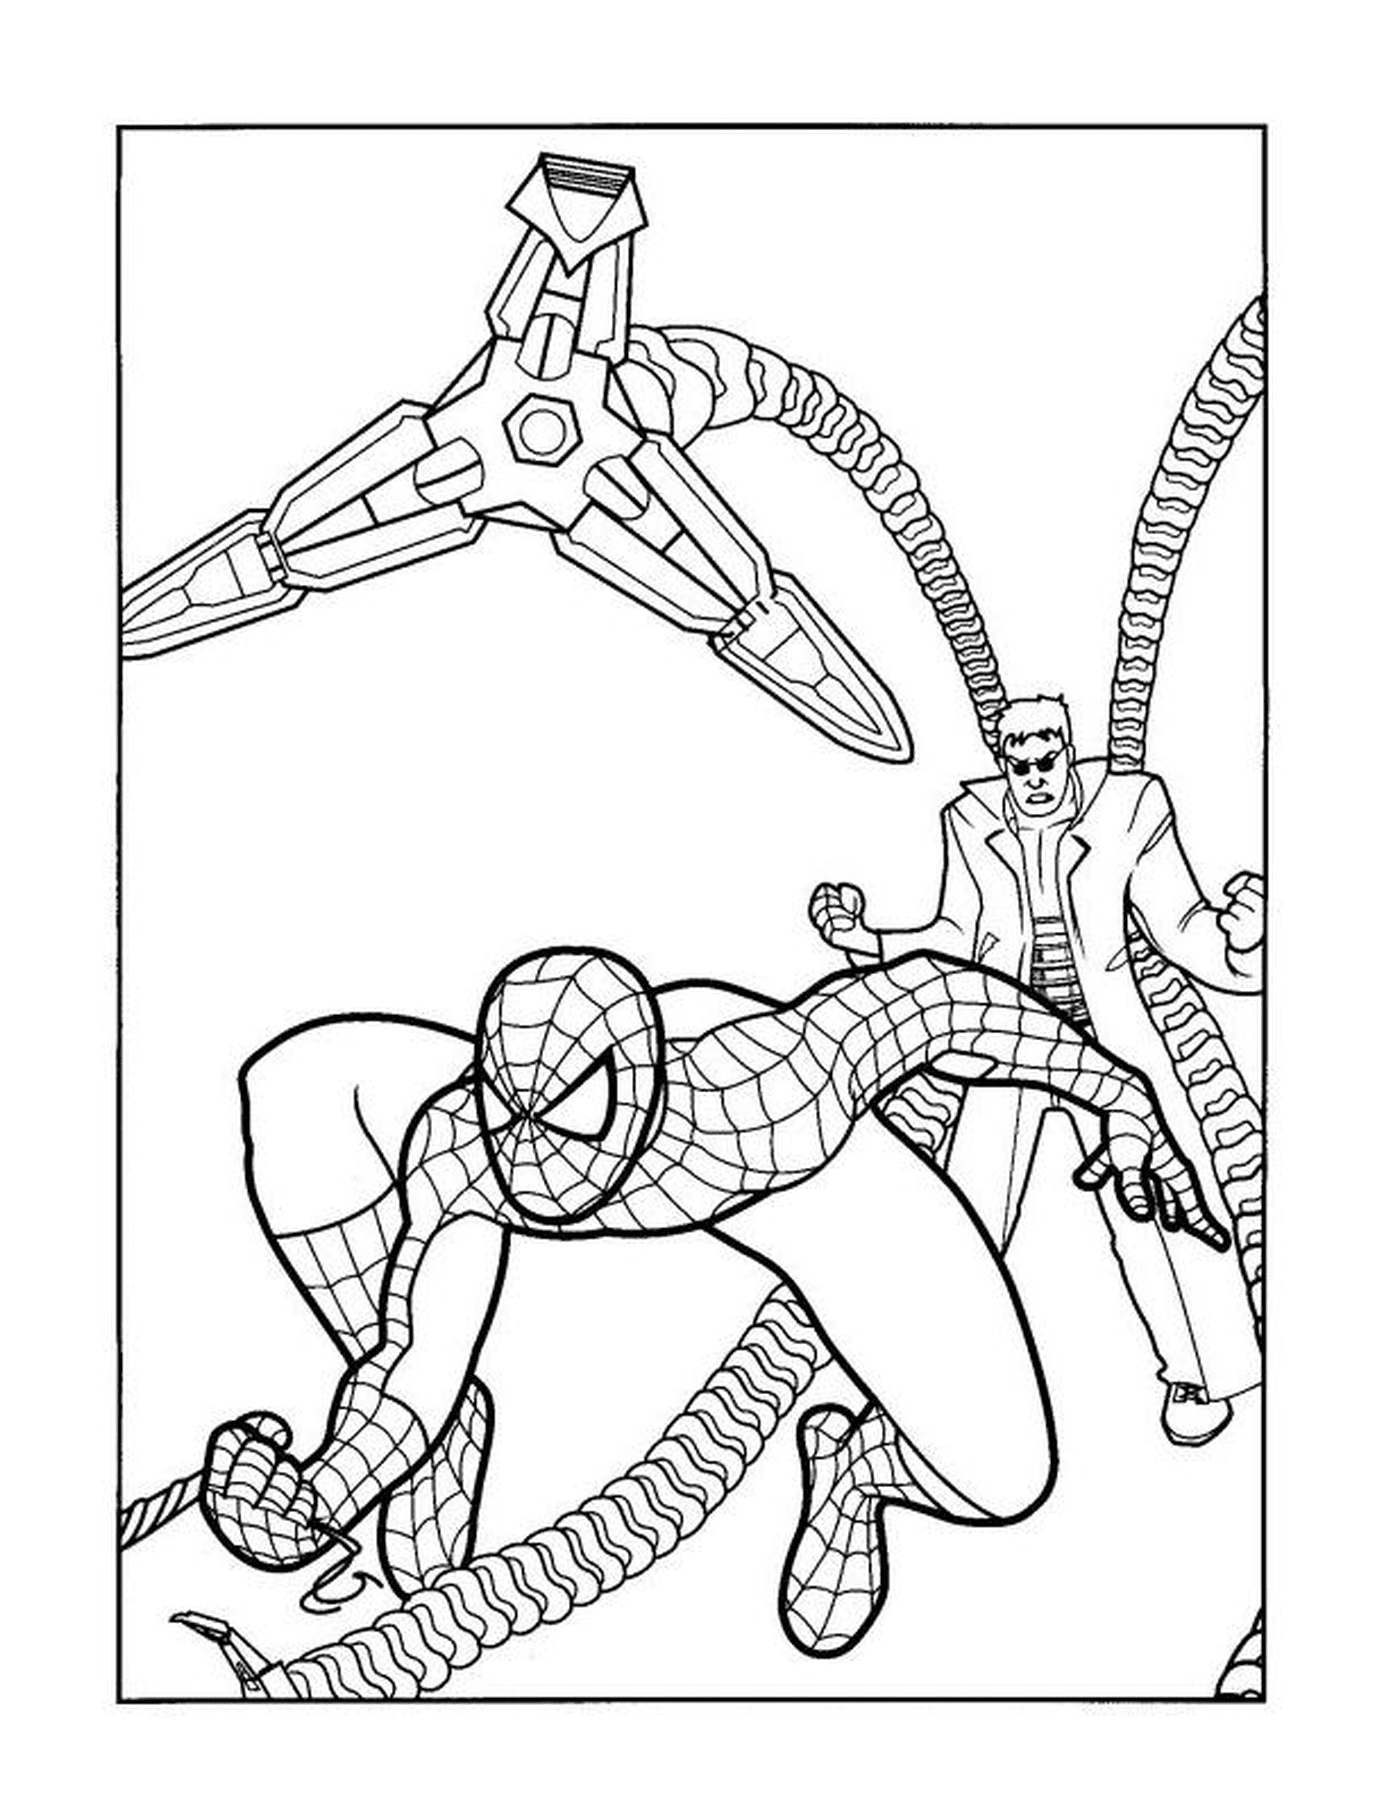  Доктор Октопус пытается поймать Человека-паука 